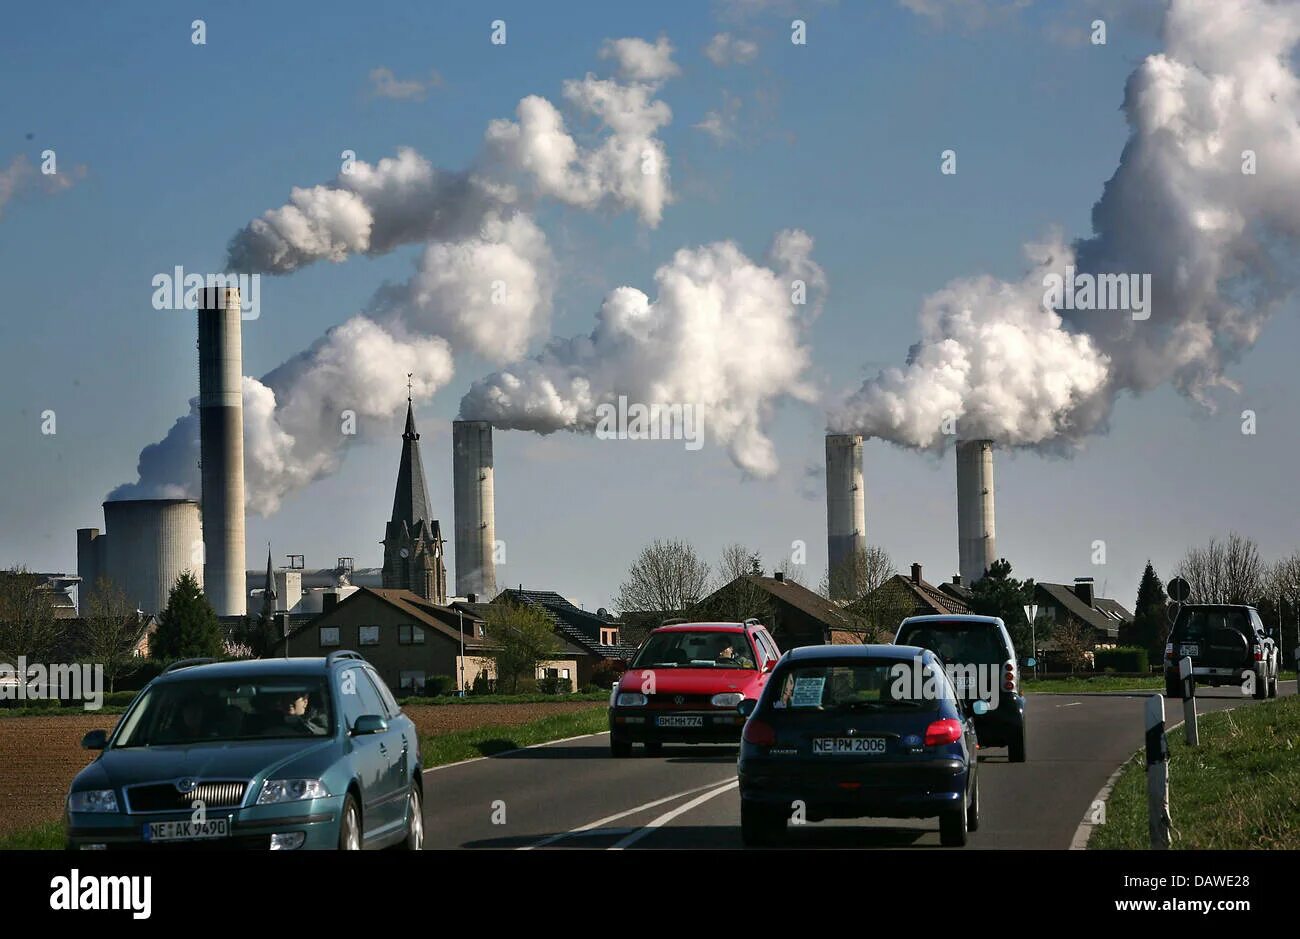 Pollution pictures. Загрязнение воздуха. Загрязнители воздуха. Загрязнение воздуха в Германии. Вредные выбросы в атмосферу.